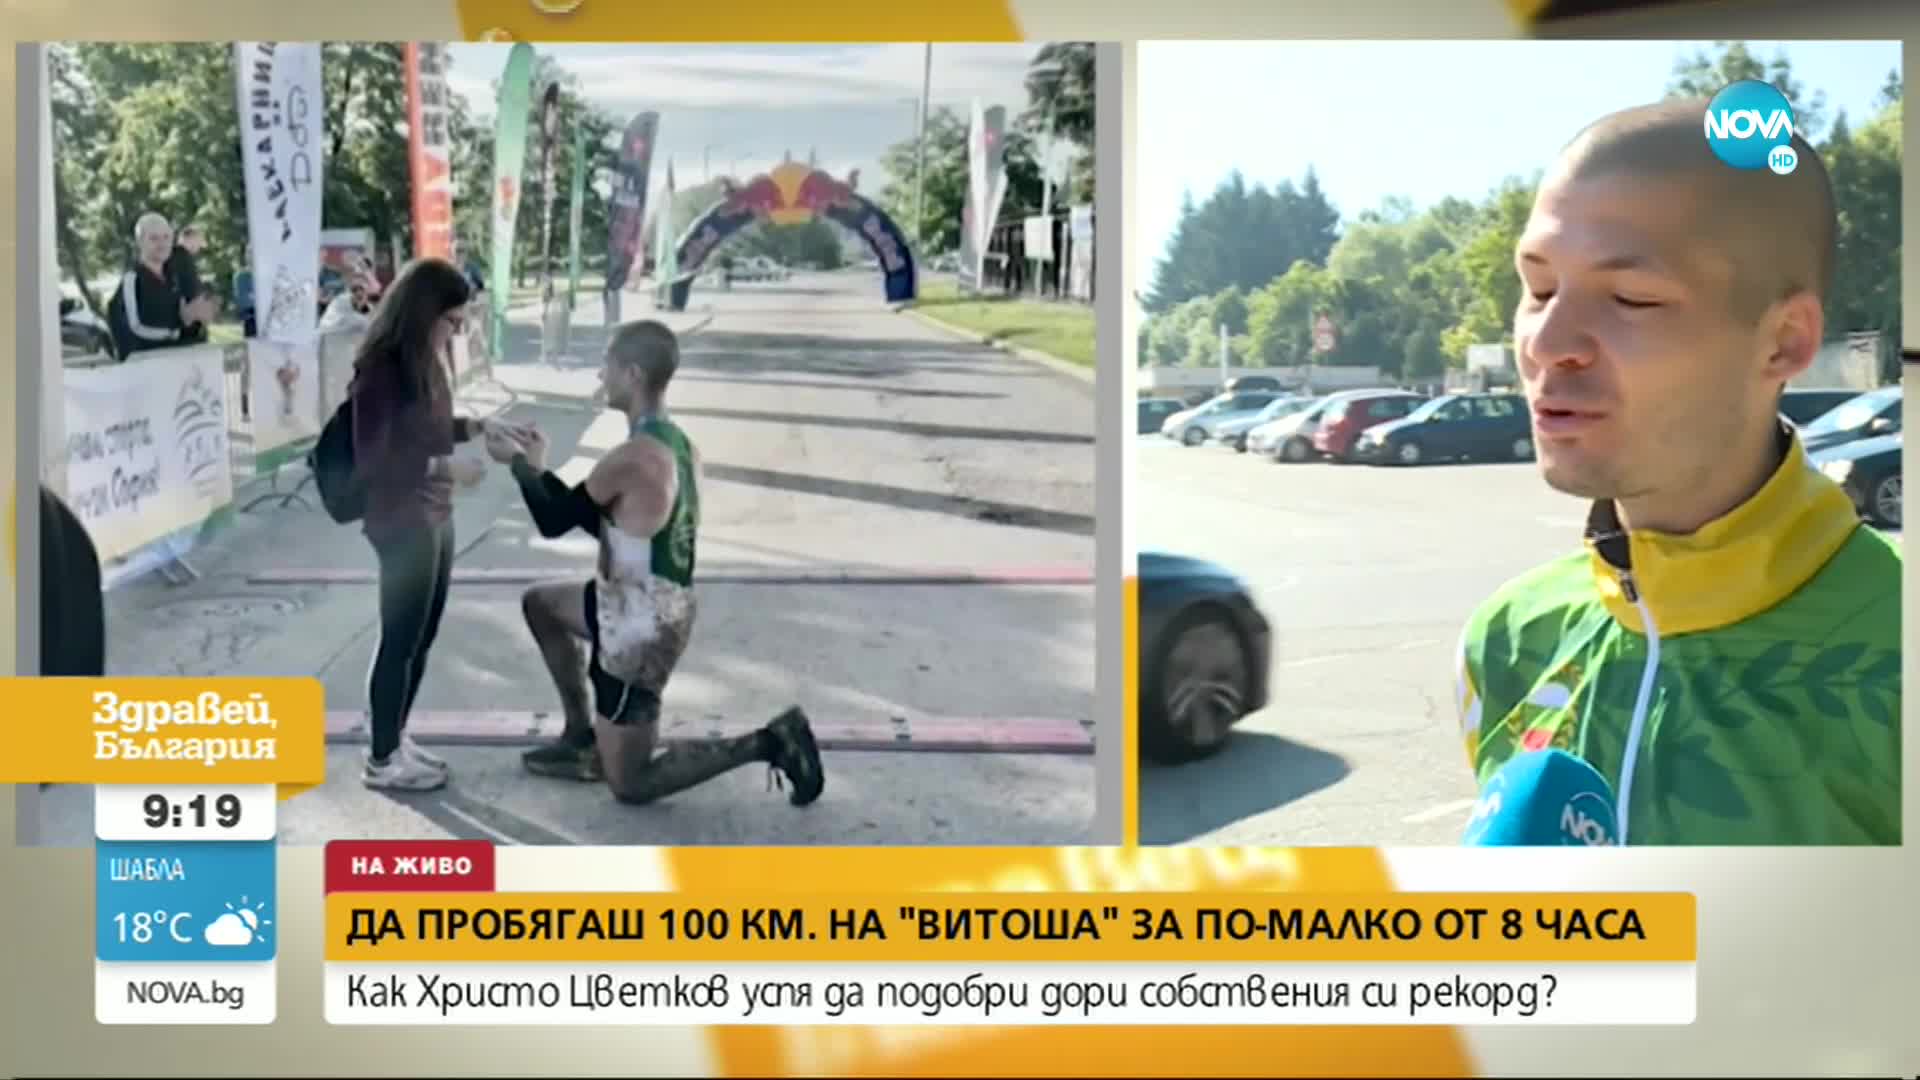 РЕКОРД: Българин пробяга 100 км. на Витоша за под 8 часа